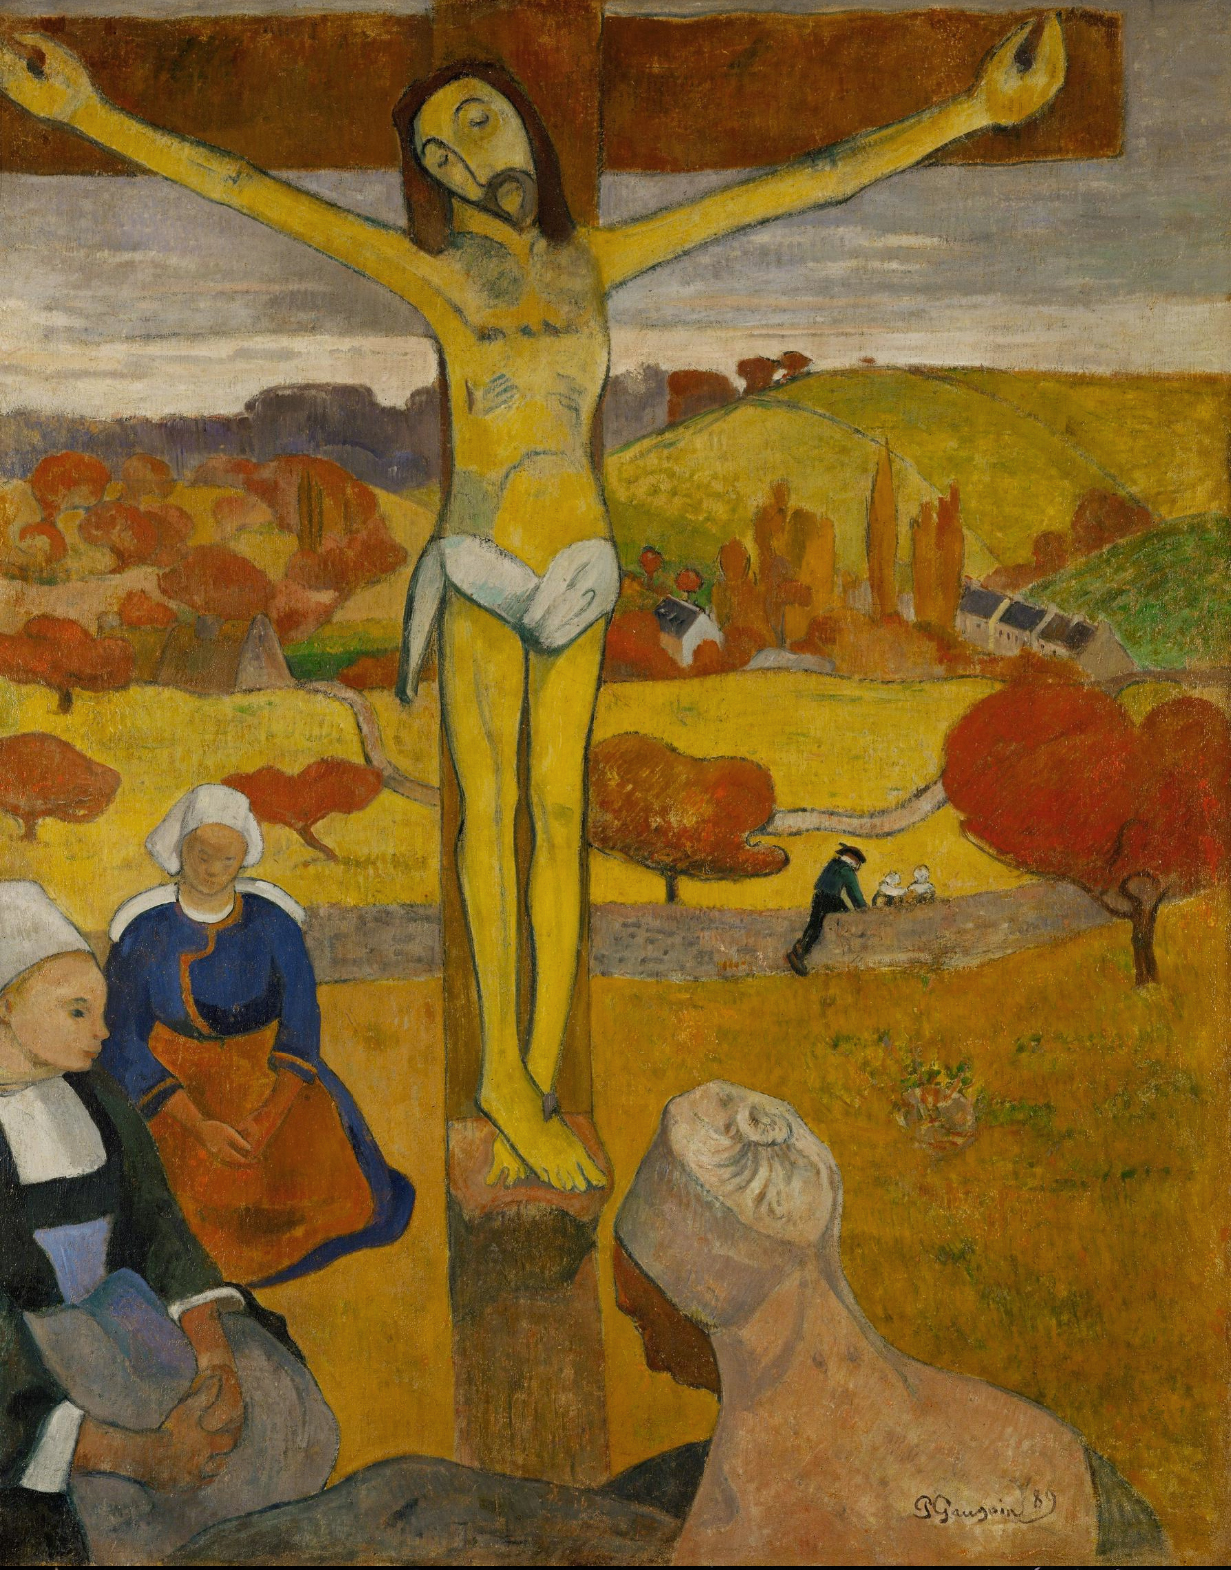 고갱의 걸작으로 알려진 황색예수의 머리도 왼쪽으로 기울어져 있다. Paul Gauguin  (1848–1903), 'The Yellow Christ', 1889, oil on canvas, 92.1 * 73 cm, Albright–Knox Art Gallery.